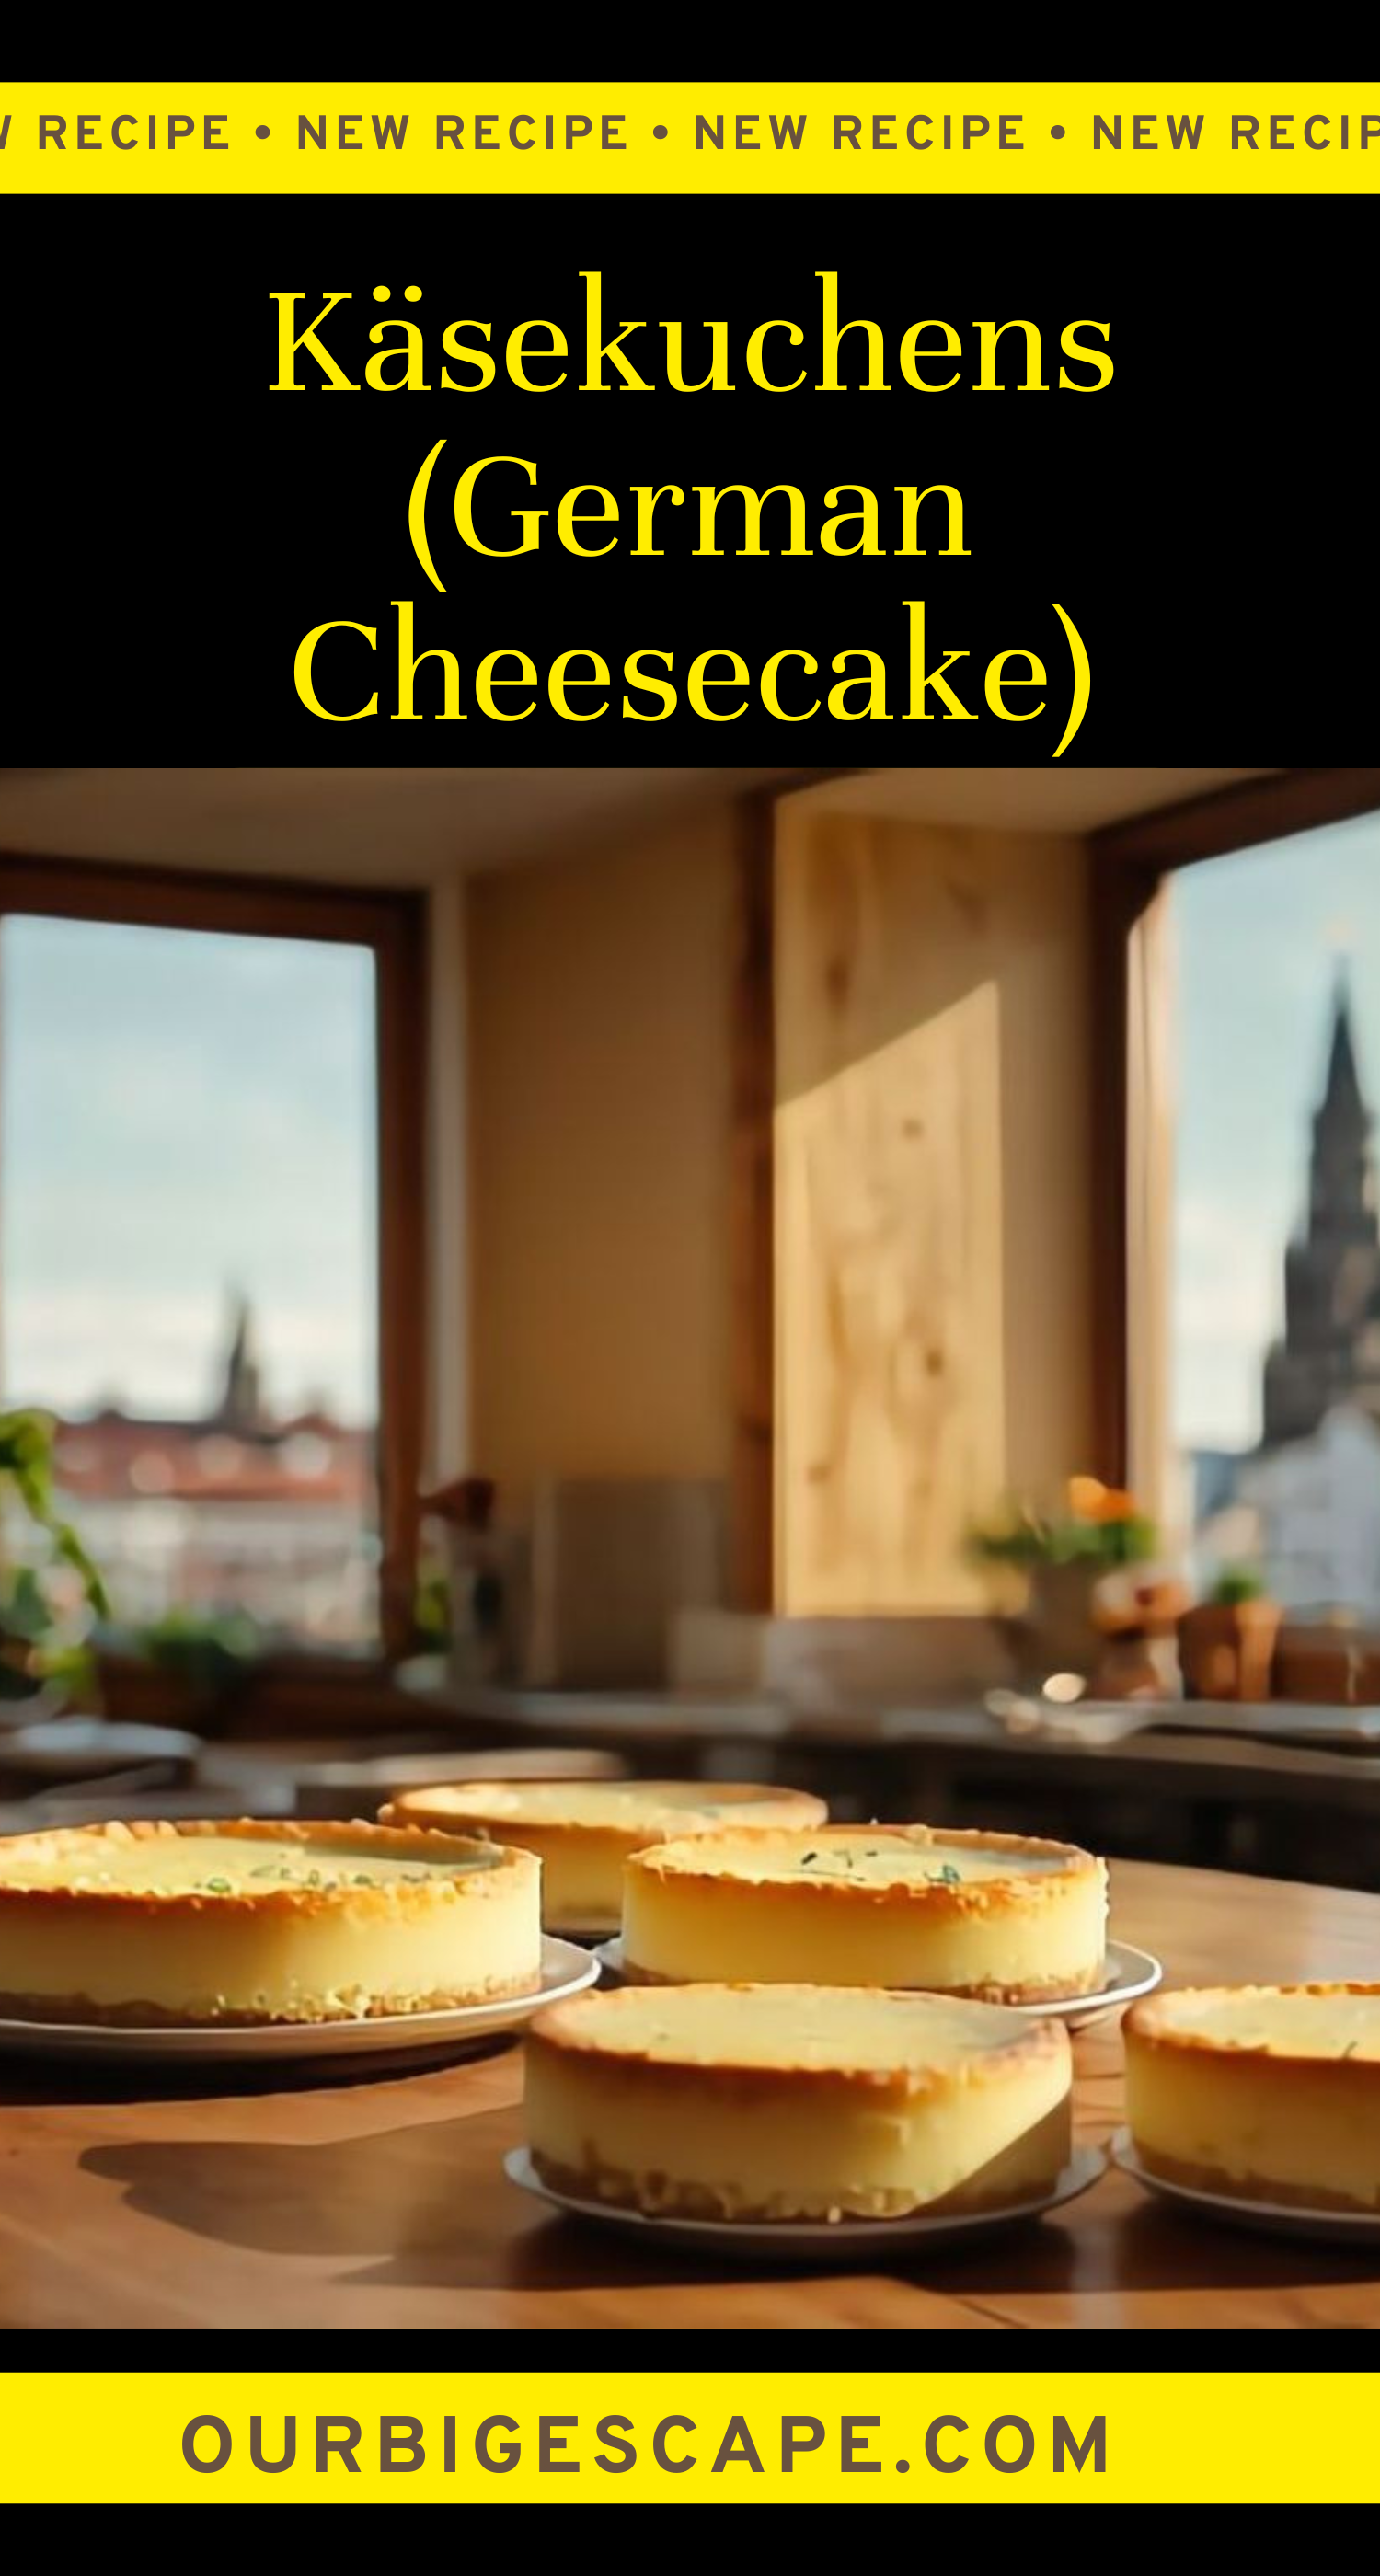 Käsekuchens (German Cheesecake)